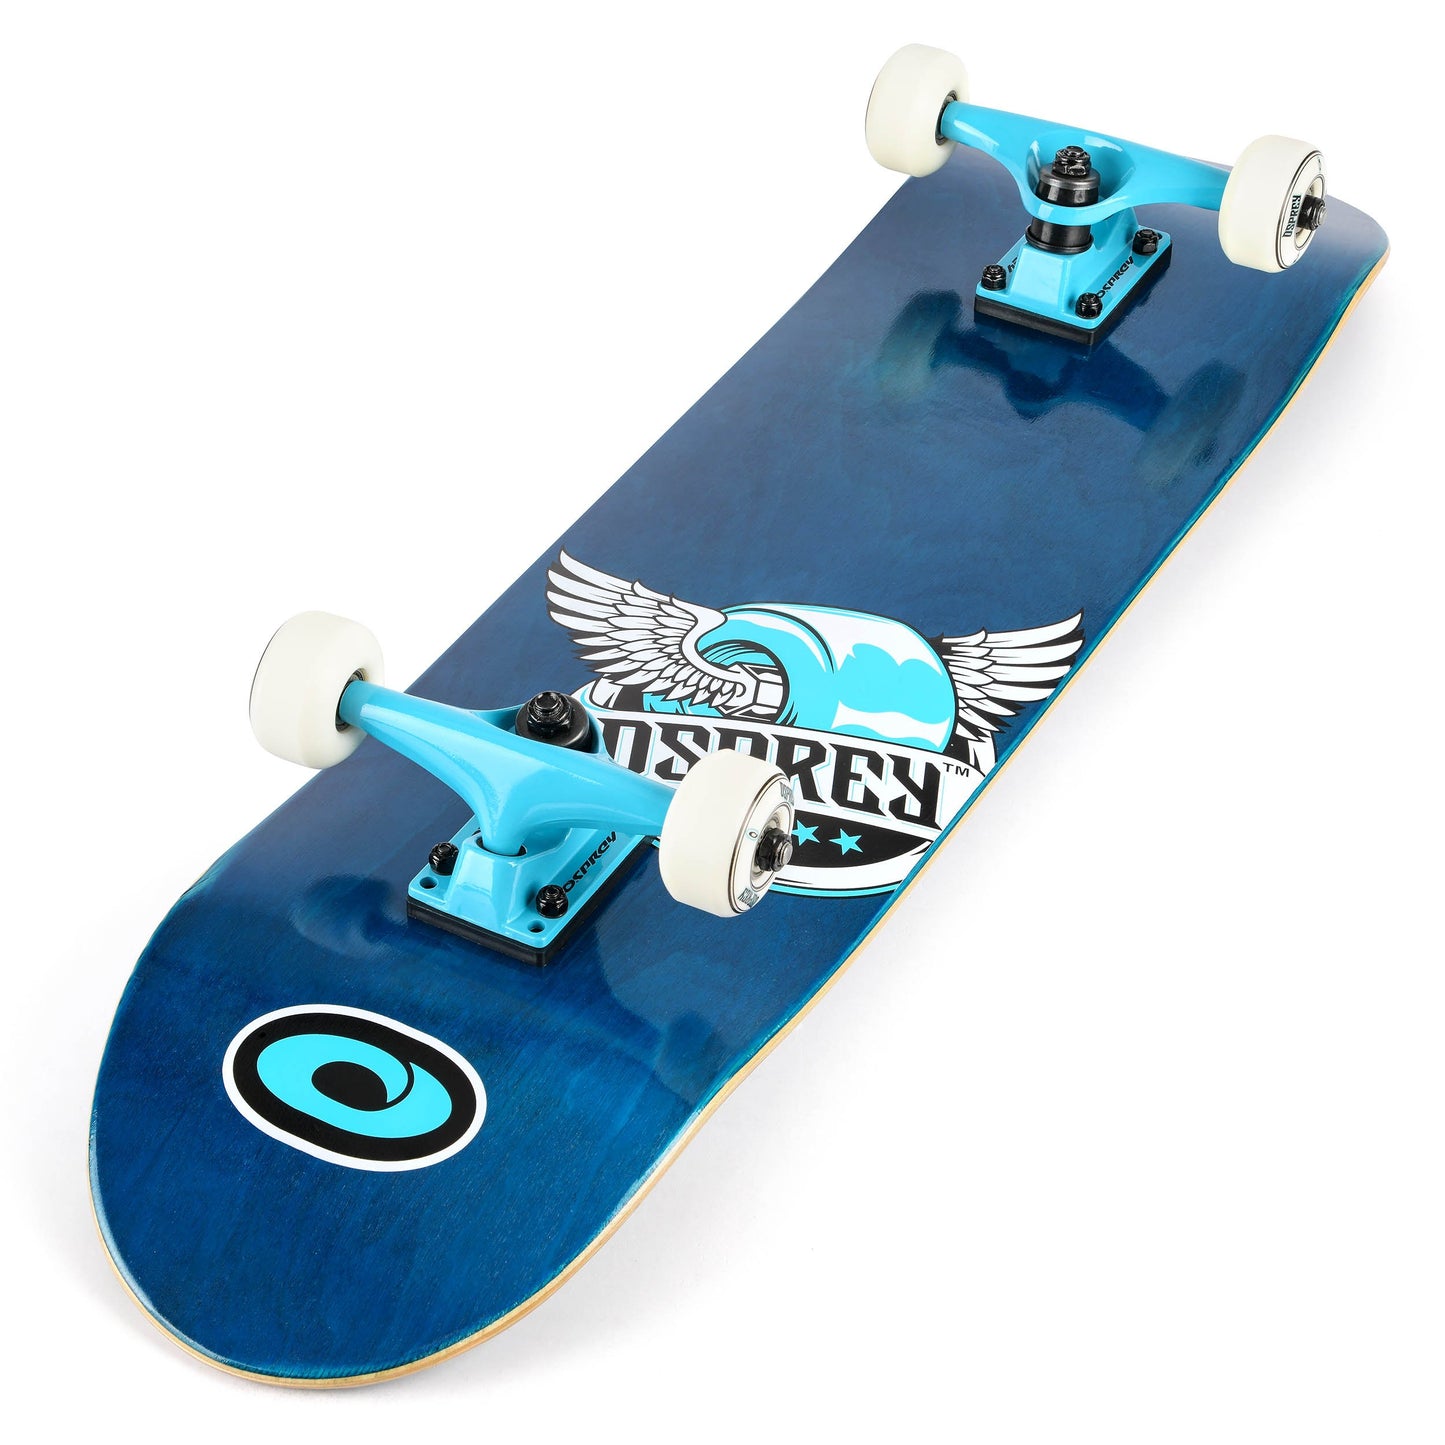 OSPREY® - Blocks - 31" Double Kick Skateboard Beginners 9 Ply Maple Deck DoubleKick Adults / Kids